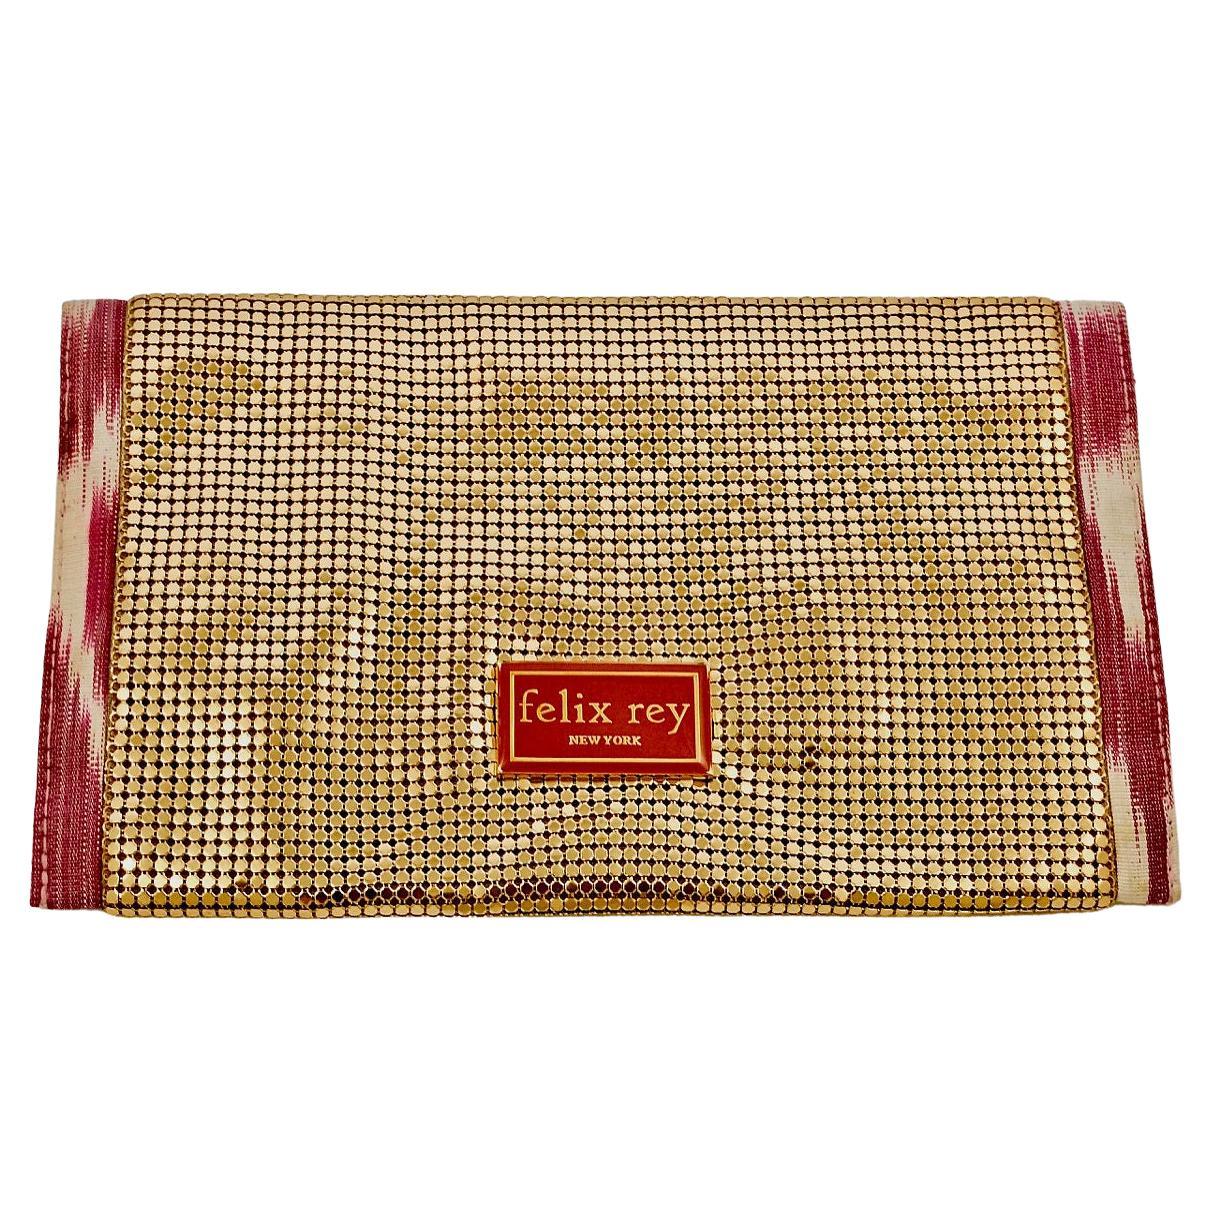 Wunderschöne Felix Rey New York Clutch-Tasche aus goldenem Netz mit rosa und weißem Ikat-Gewebe und doppeltem Magnetverschluss. Die Breite beträgt 22,8 cm / 8,9 Zoll und die Höhe 14 cm / 5,5 Zoll. Im Inneren befindet sich ein hübsches Futter mit